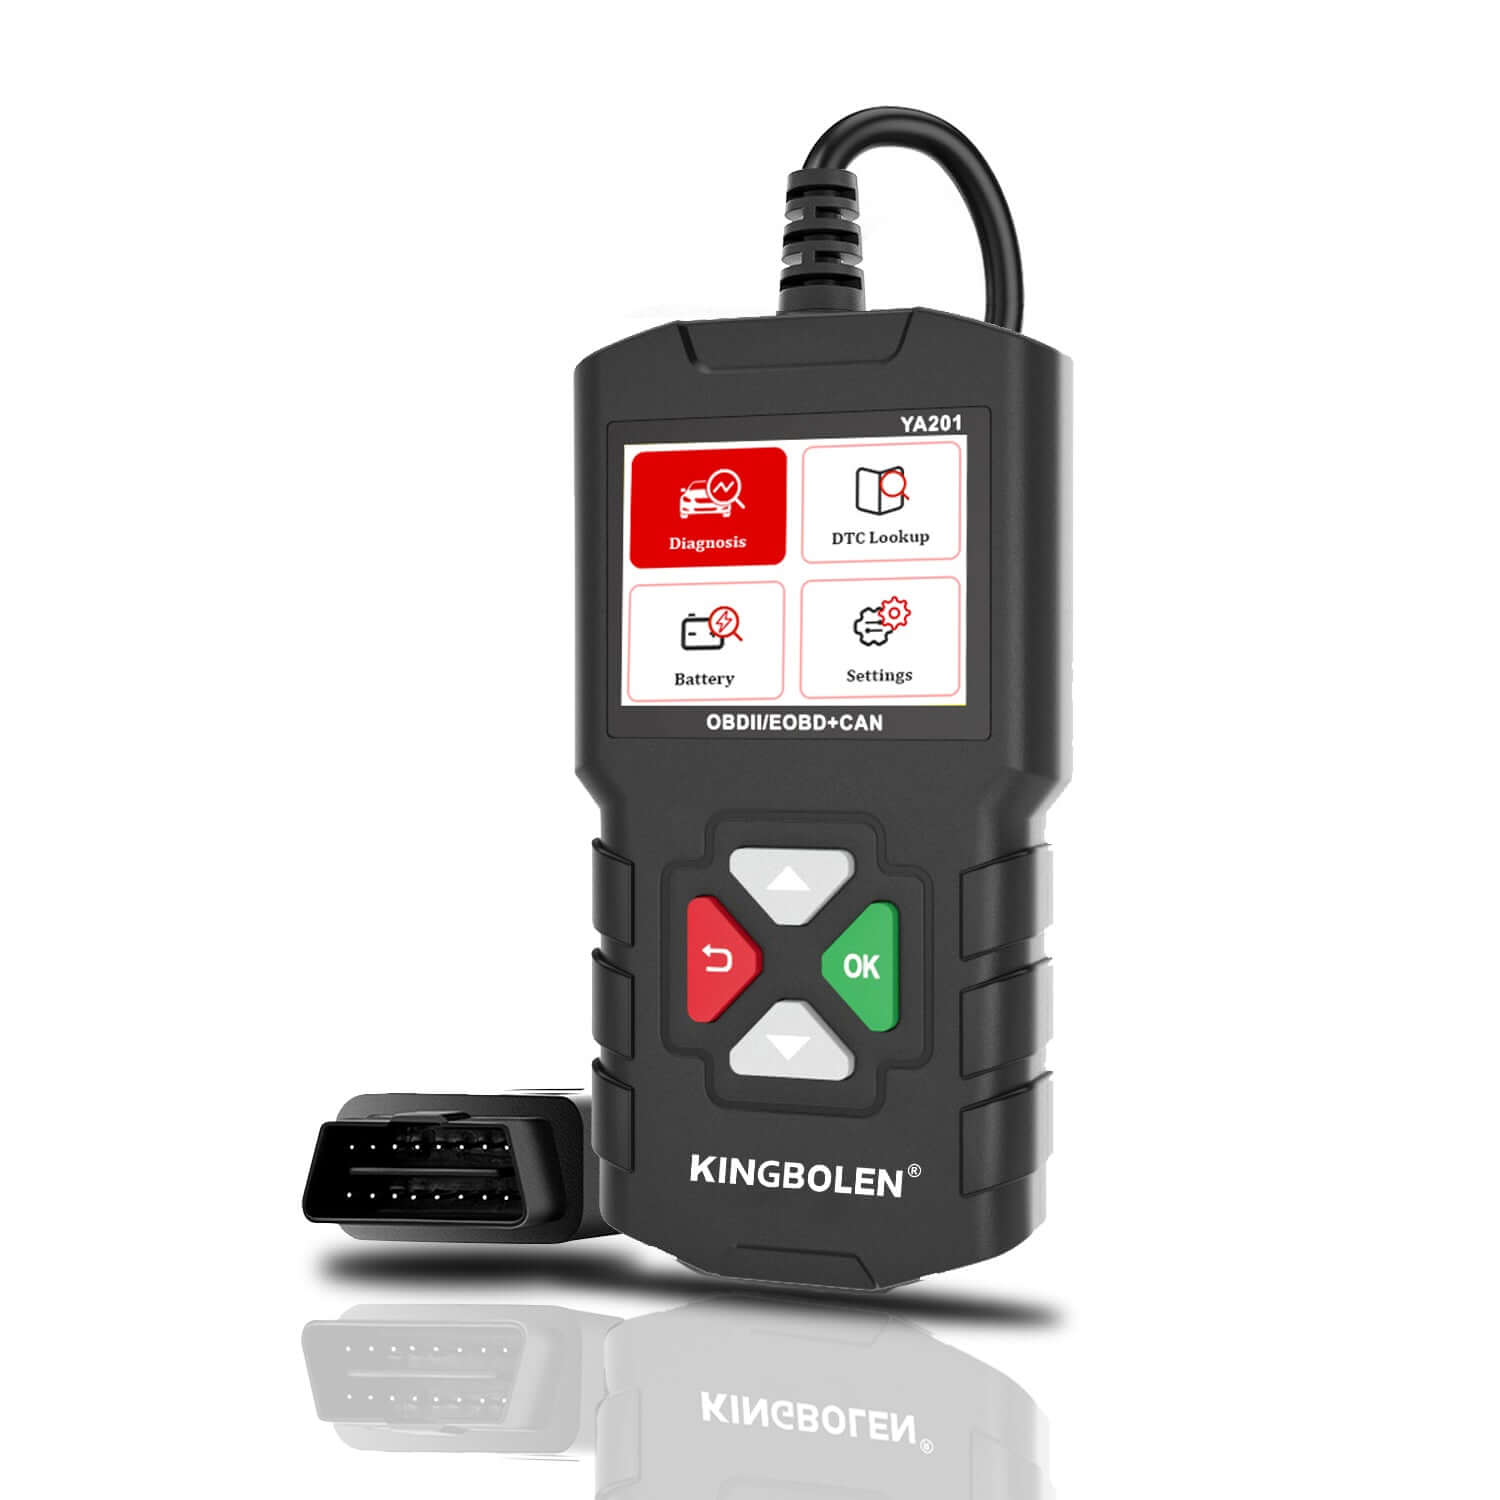 kingbolen-ya201-enhanced-obd2-scanner-with-full-obd2-functions